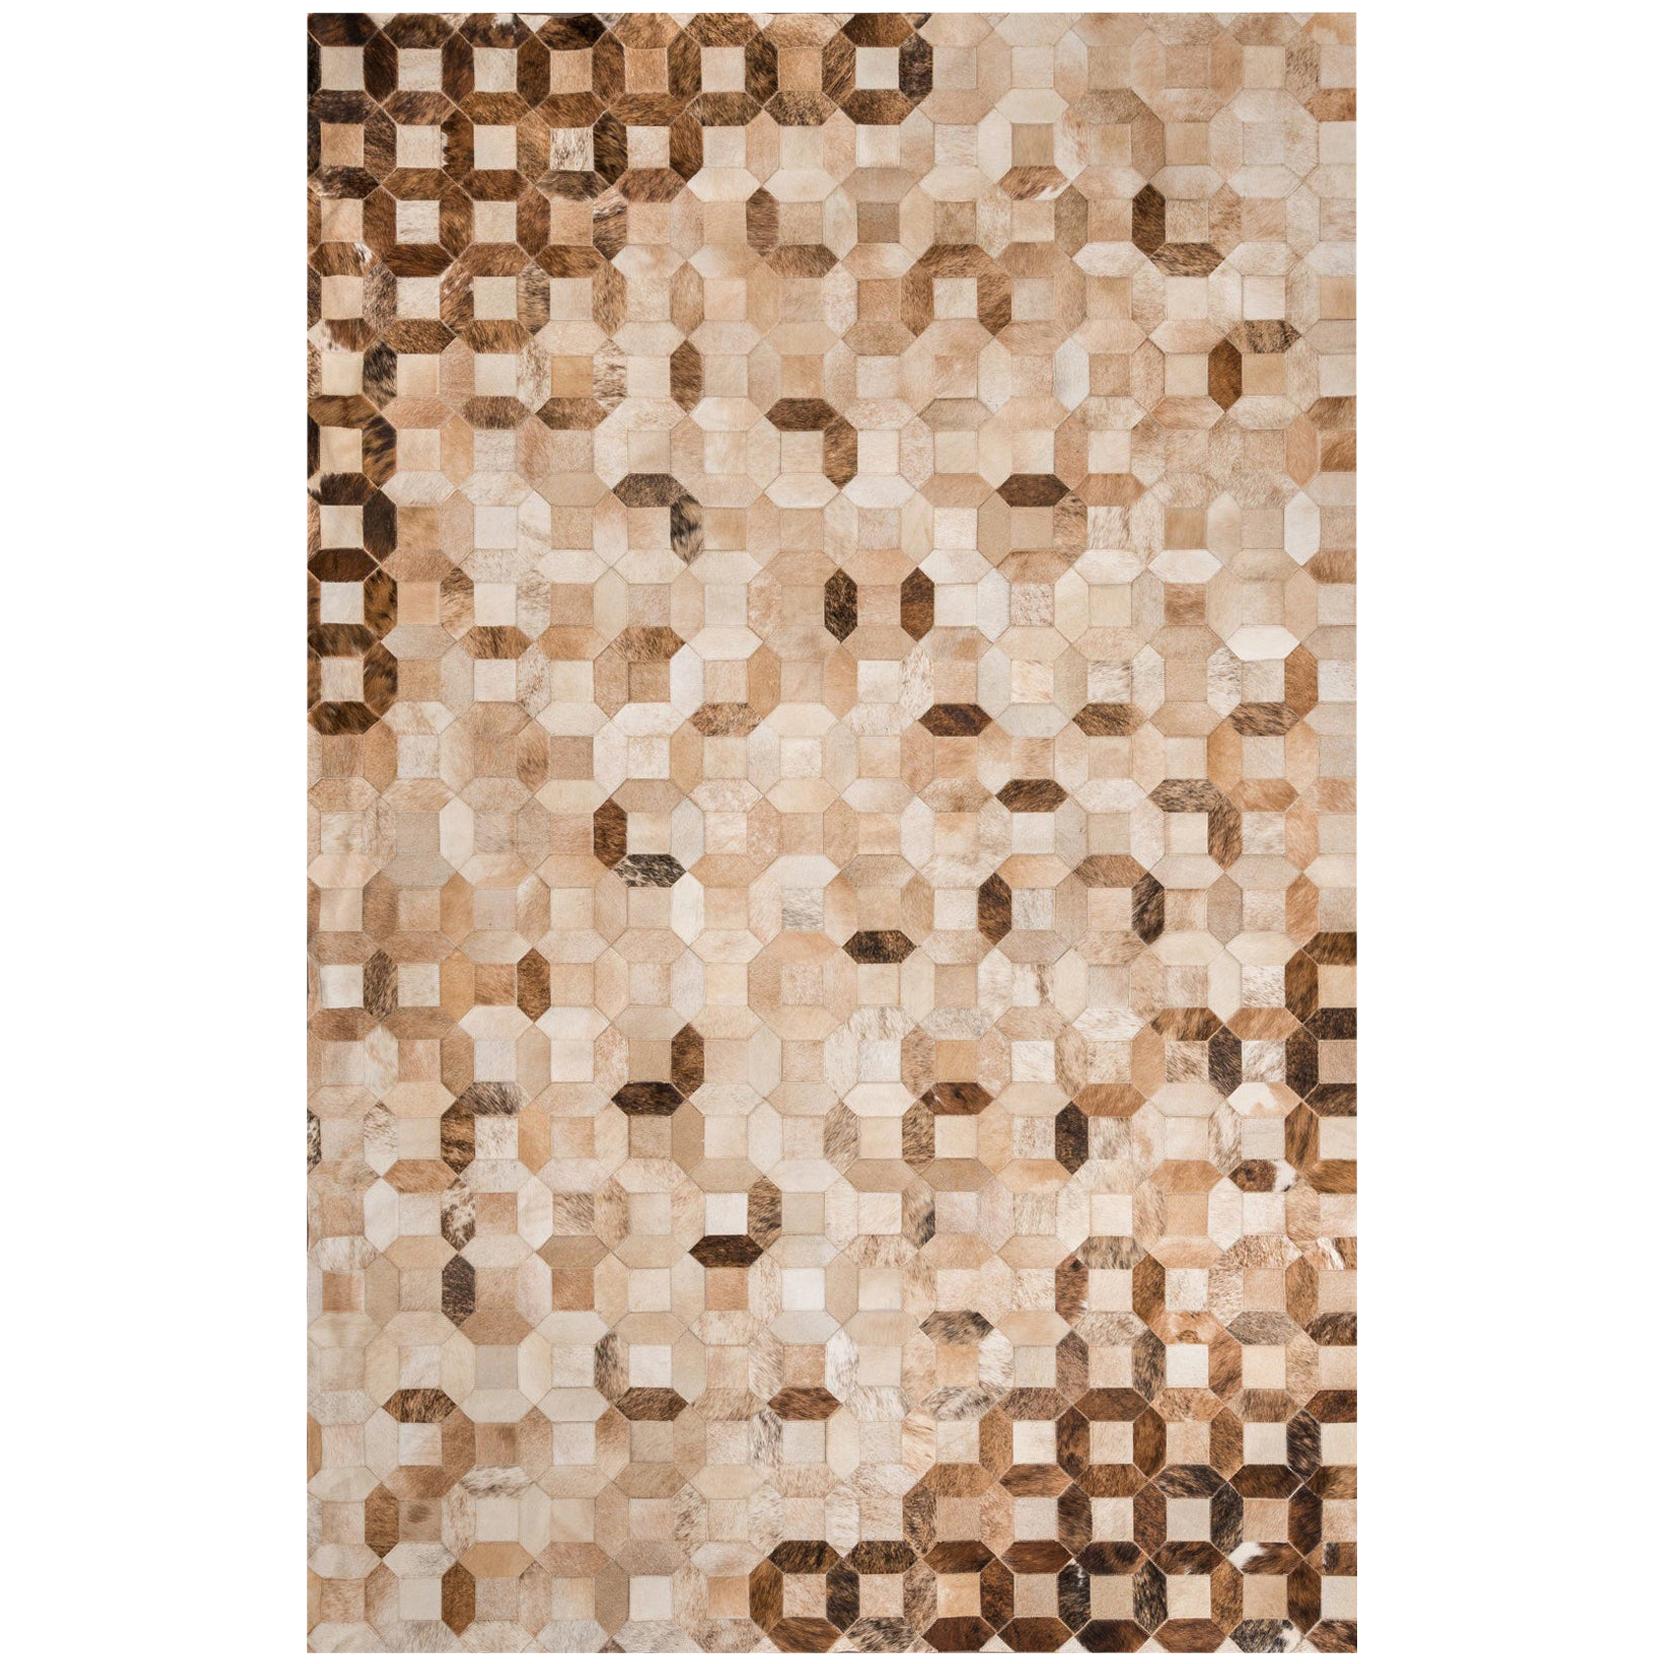 Tan, caramel Tessellation Trellis Cowhide Area Floor Rug X-Large 